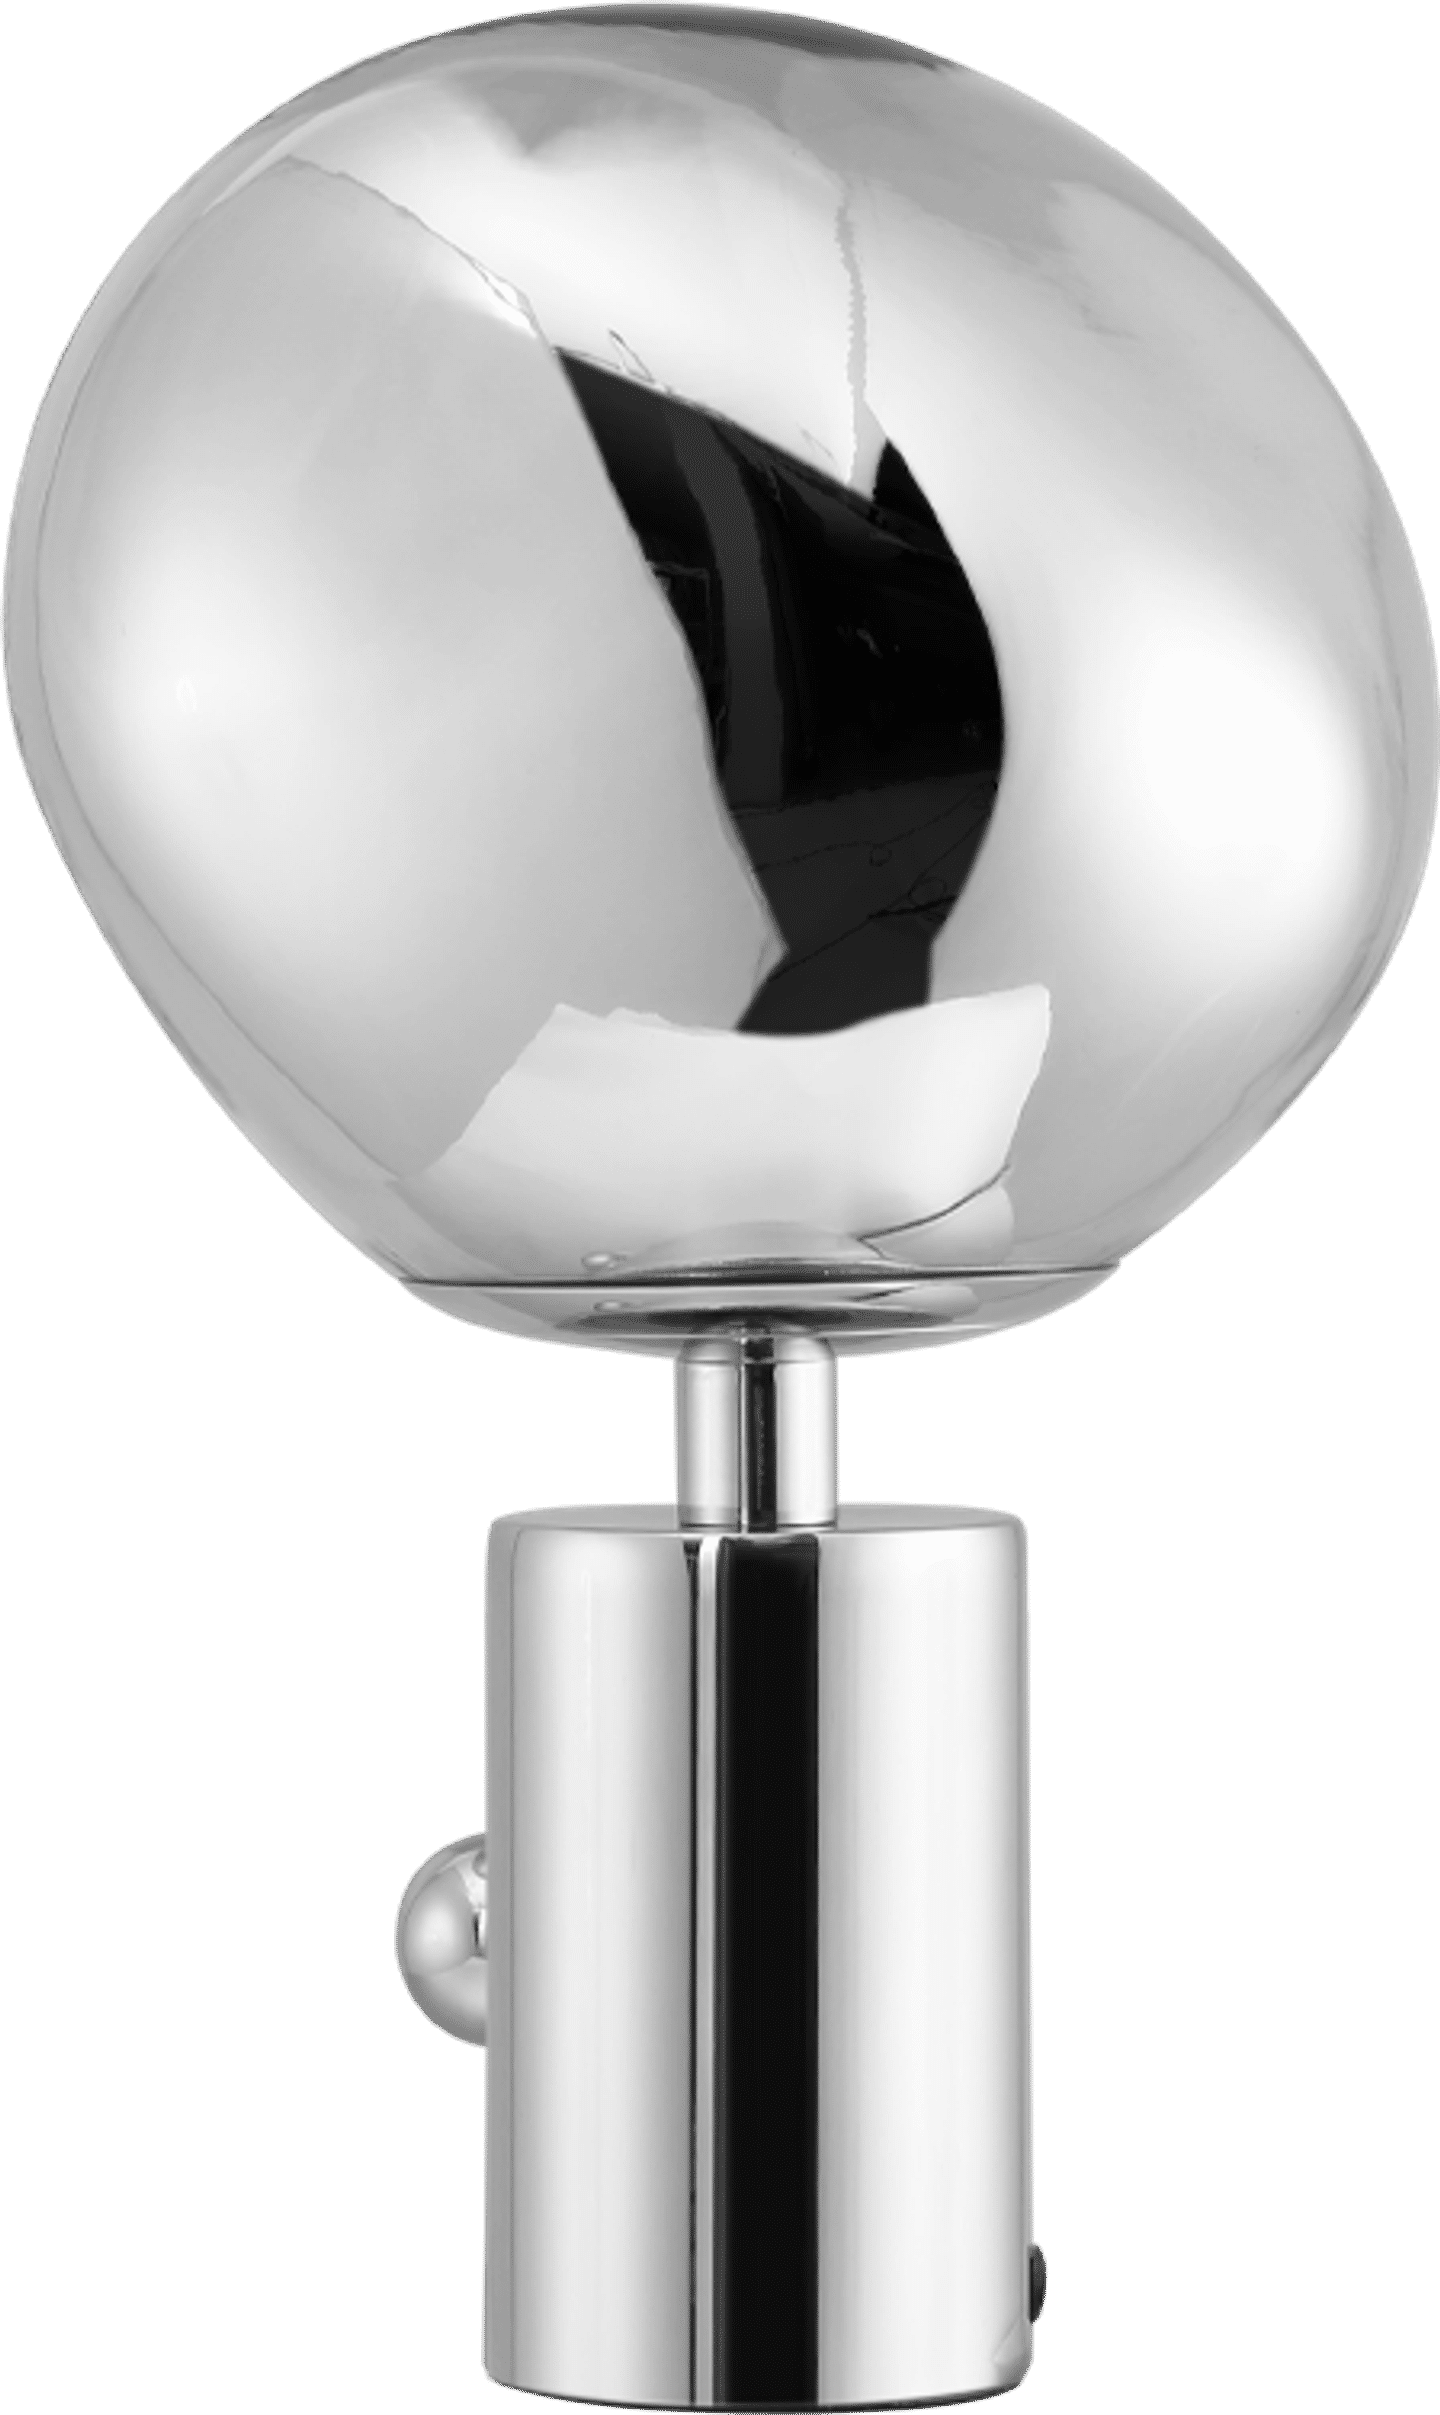 Melt Style Tischlampe Chrome image.